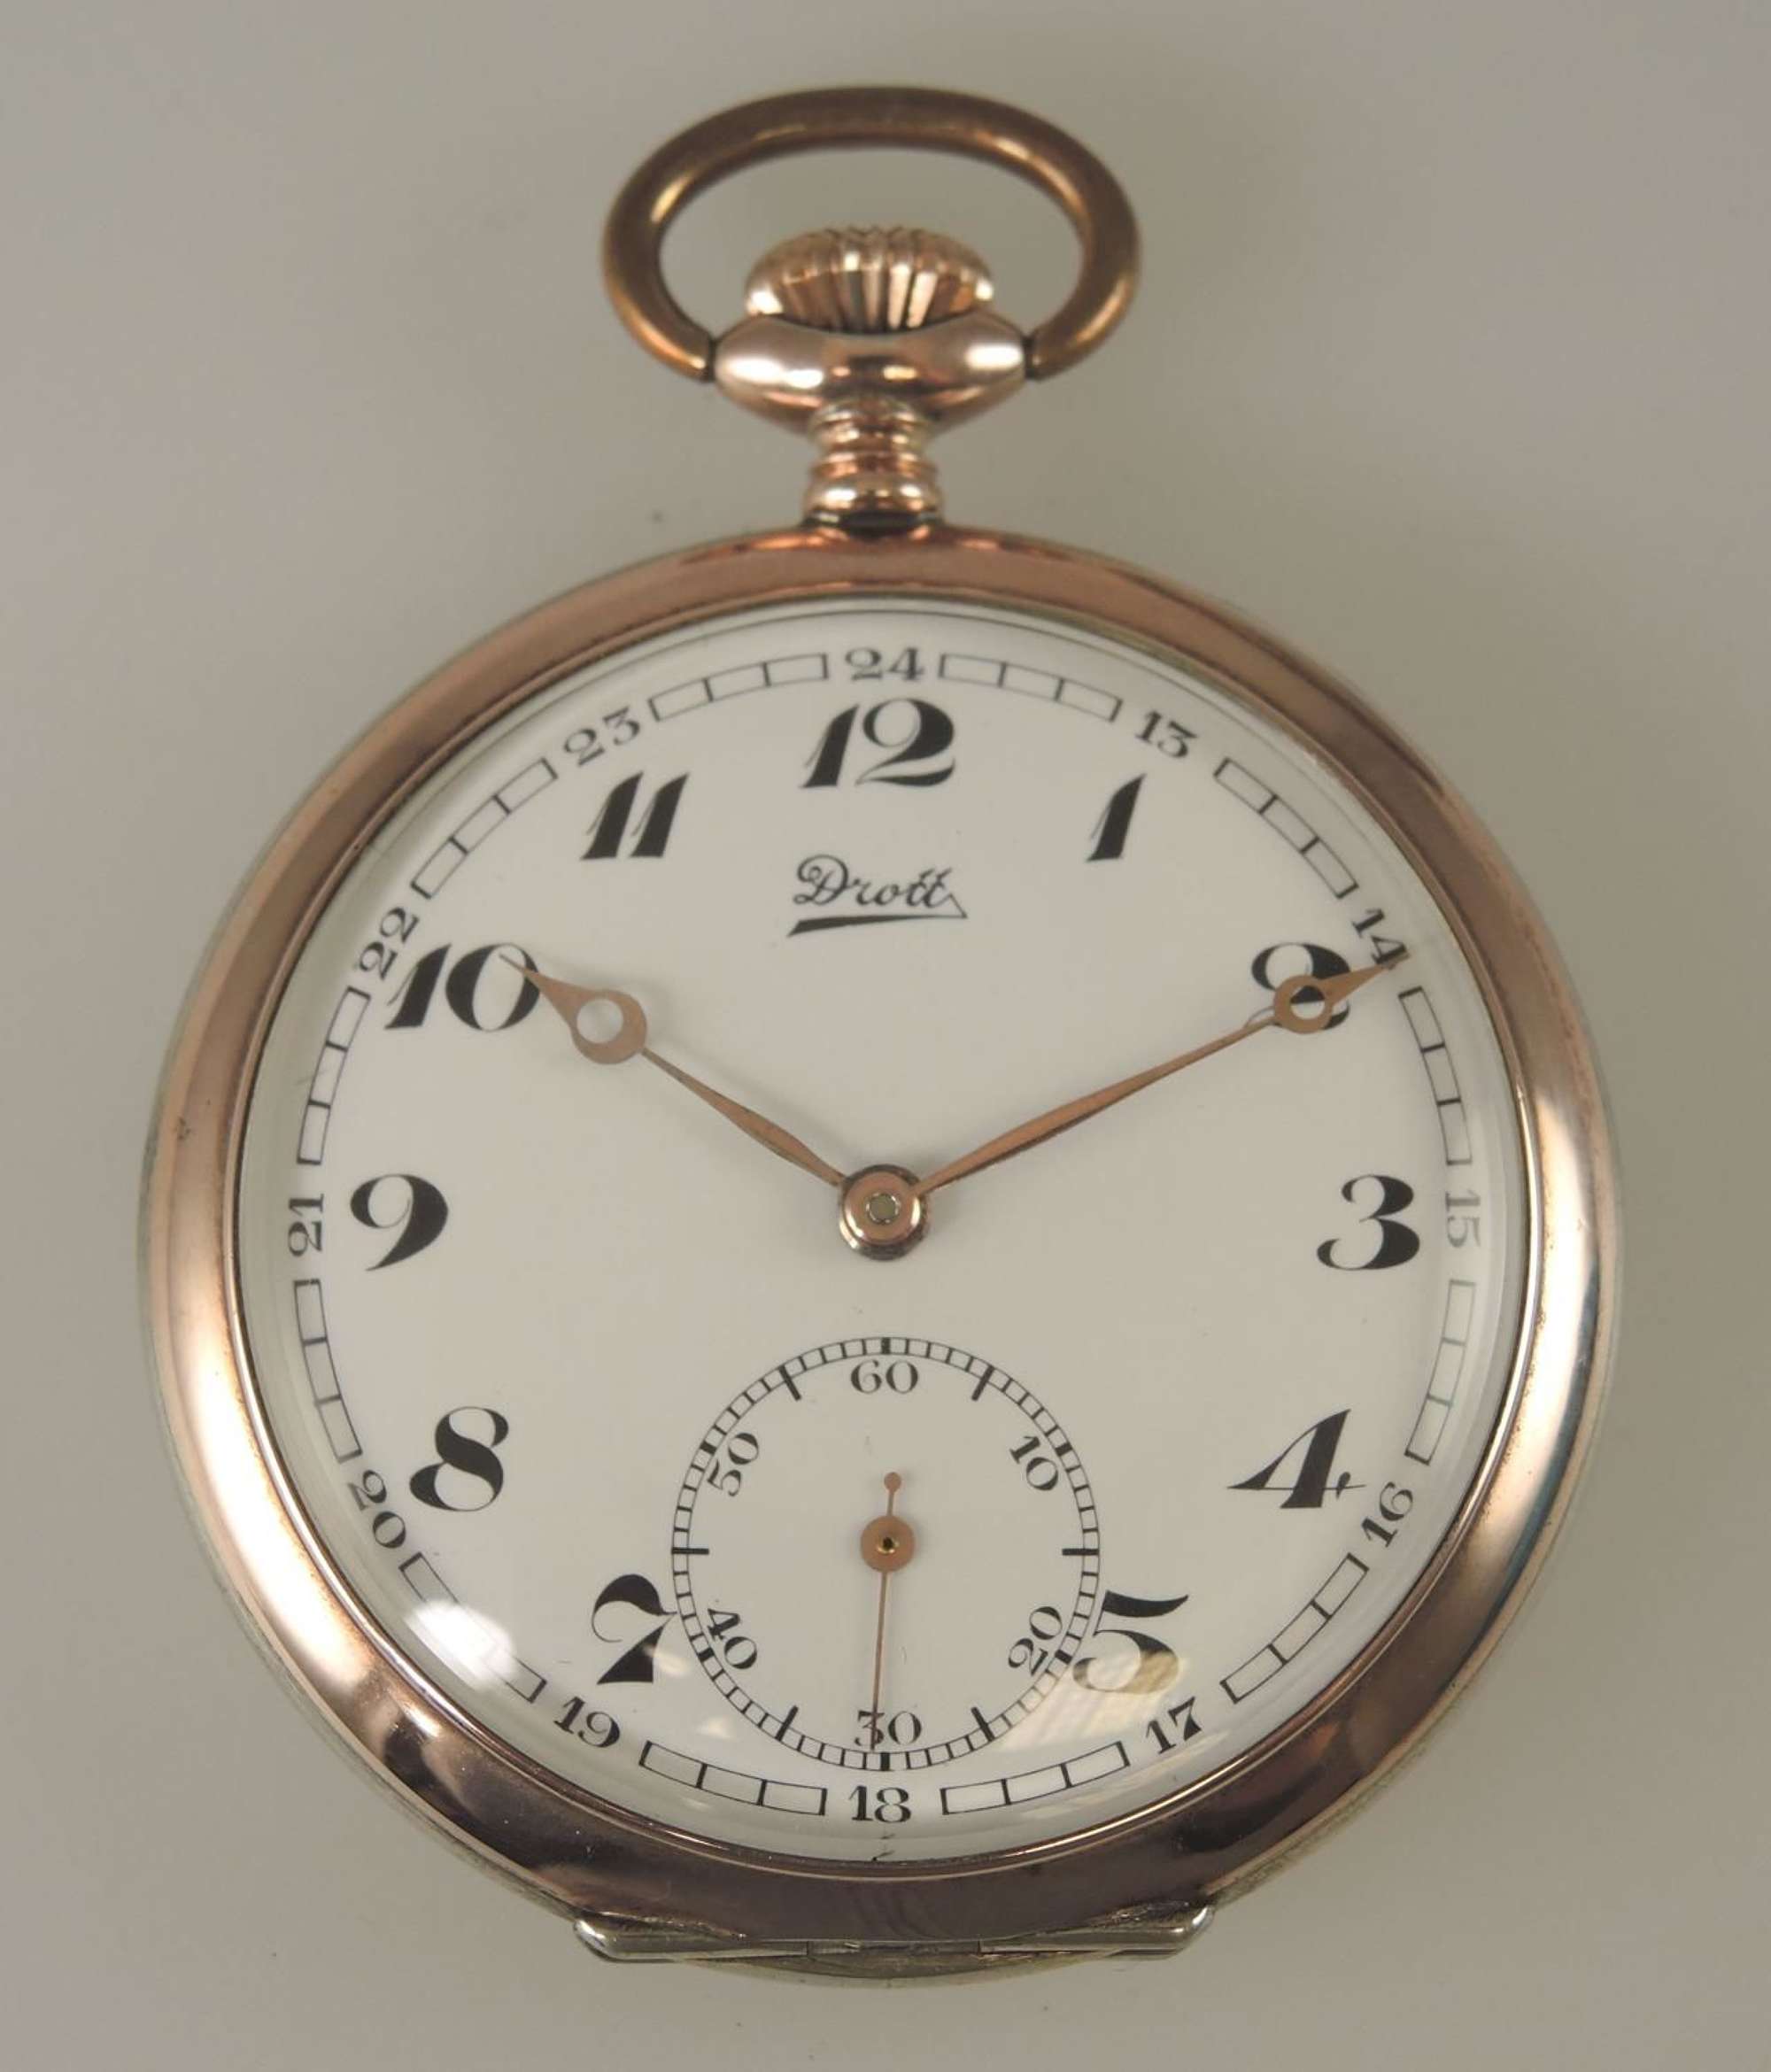 MINT Silver pocket watch by Drott c1910